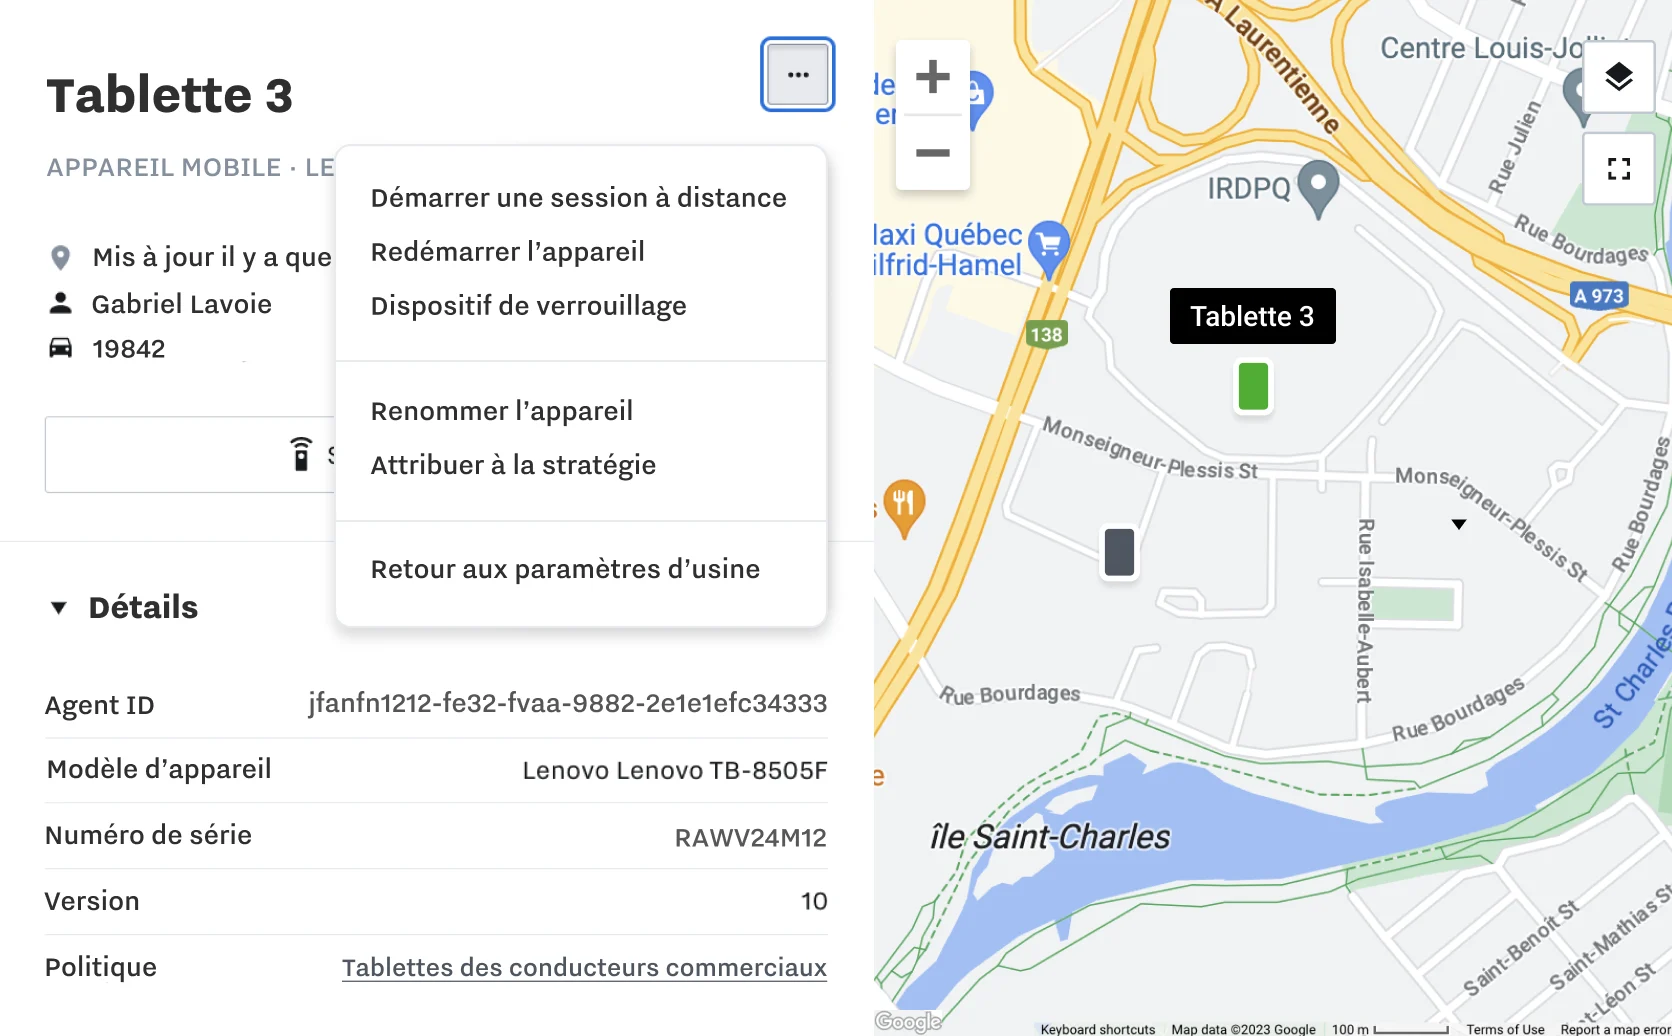 Tableau de bord Samsara avec des informations sur l'appareil mobile et une carte avec les emplacements des appareils mobiles